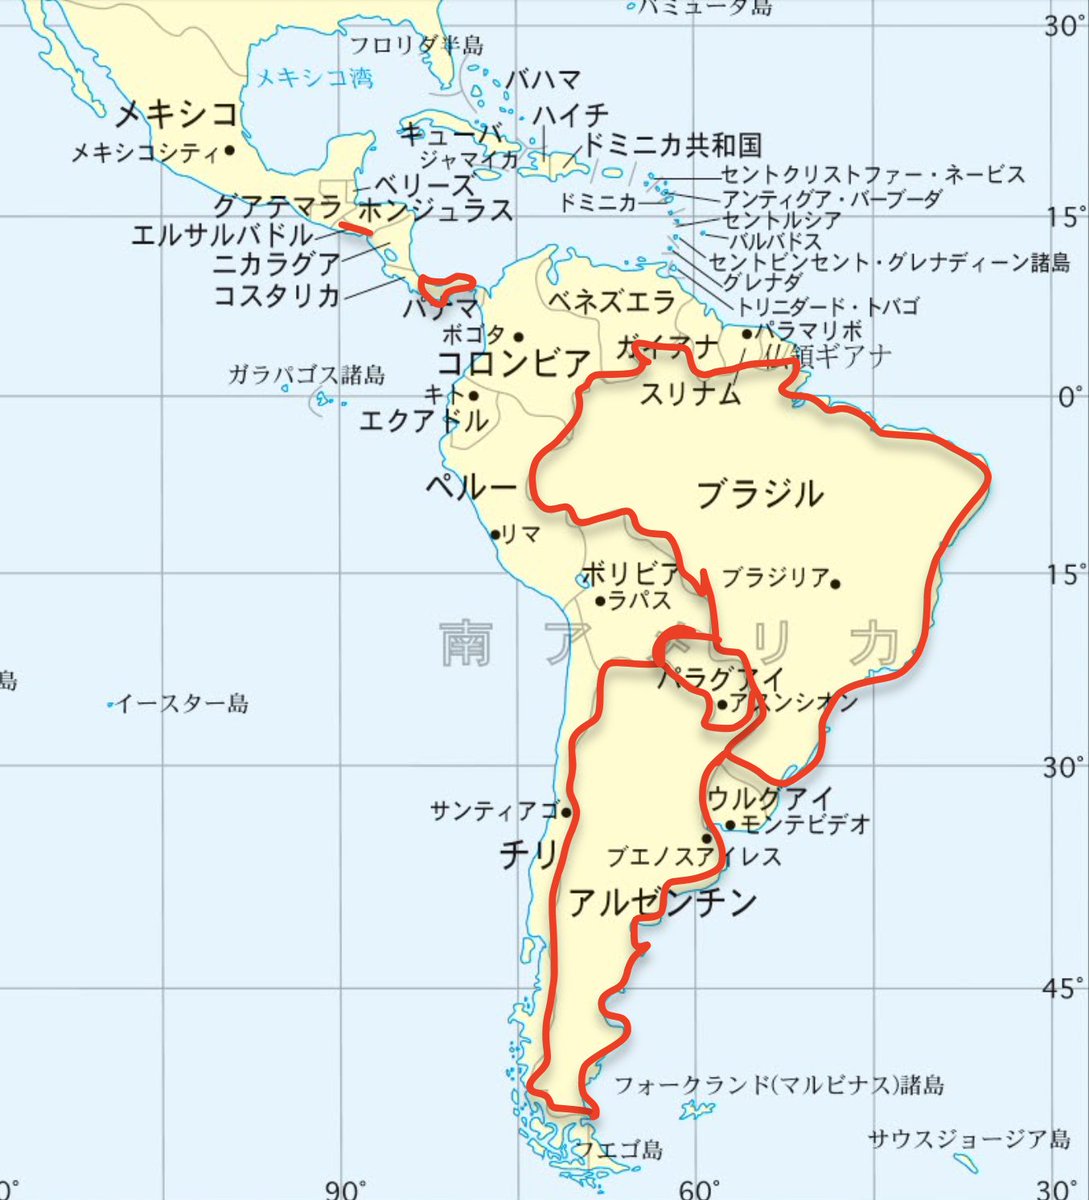 Gomechi Nft Freak Coin Postによるとエルサルバドルの他 アルゼンチン ブラジル パナマ パラグアイがビットコインを法定通貨とする案をレーザーアイで支持 流石にメキシコはないとは思いますが 地図でみると中南米全体に波及する可能性は十分ある